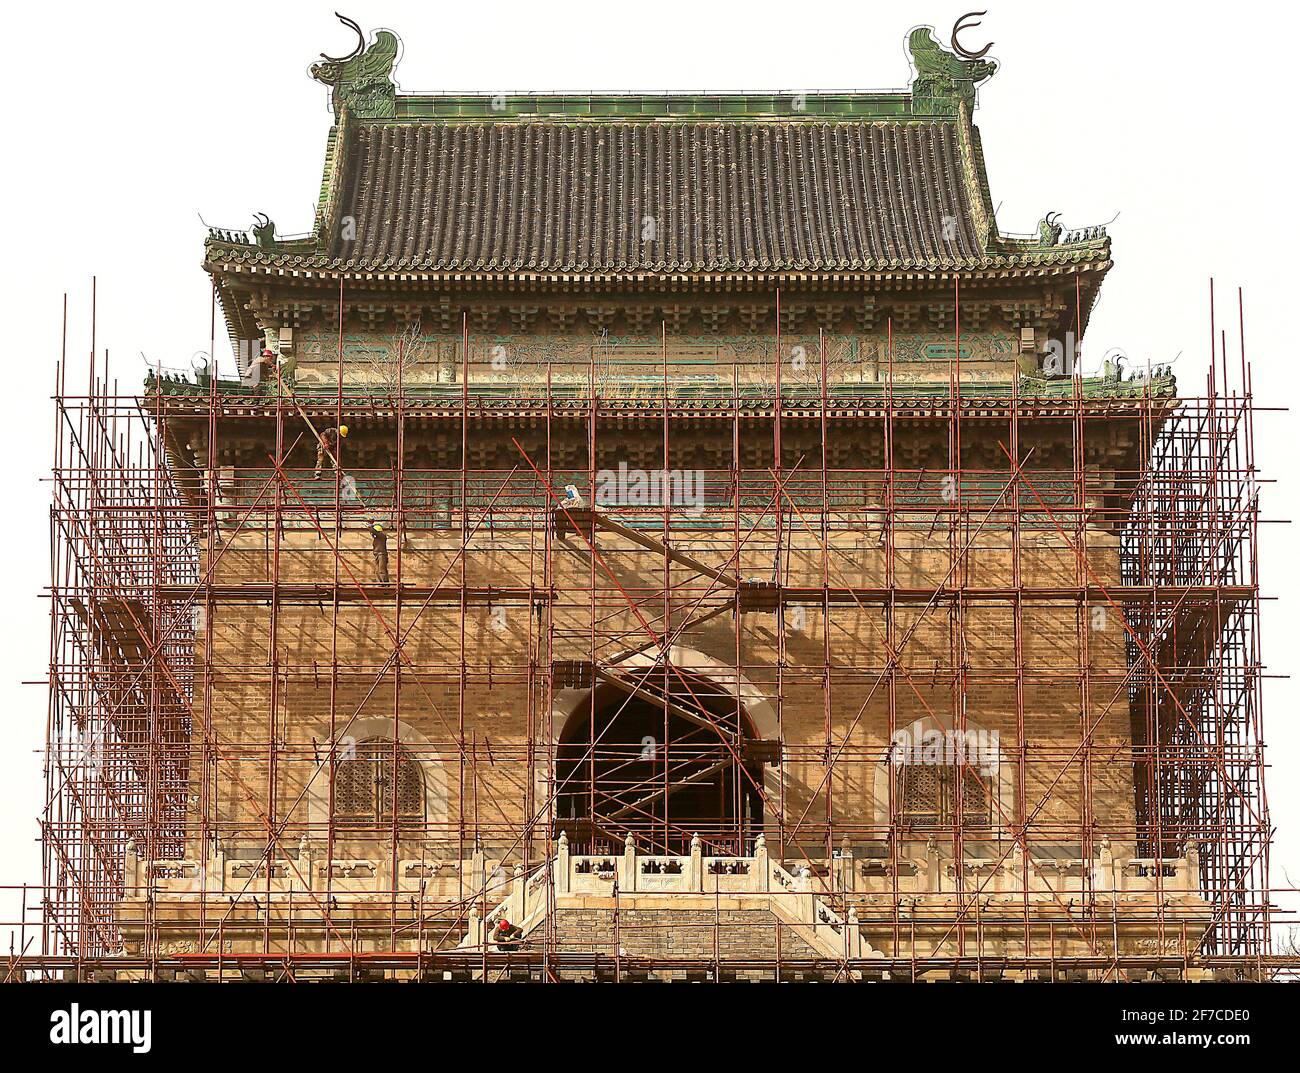 I lavori di ristrutturazione proseguono sulla Torre del tamburo sullo storico lago Houhai a Pechino martedì 6 aprile 2021. La maggior parte degli edifici storici della capitale cinese subisce lavori di ristrutturazione quasi tutto l'anno per combattere gli impatti negativi dell'inquinamento e del turismo. Foto di Stephen Shaver/UPI Foto Stock